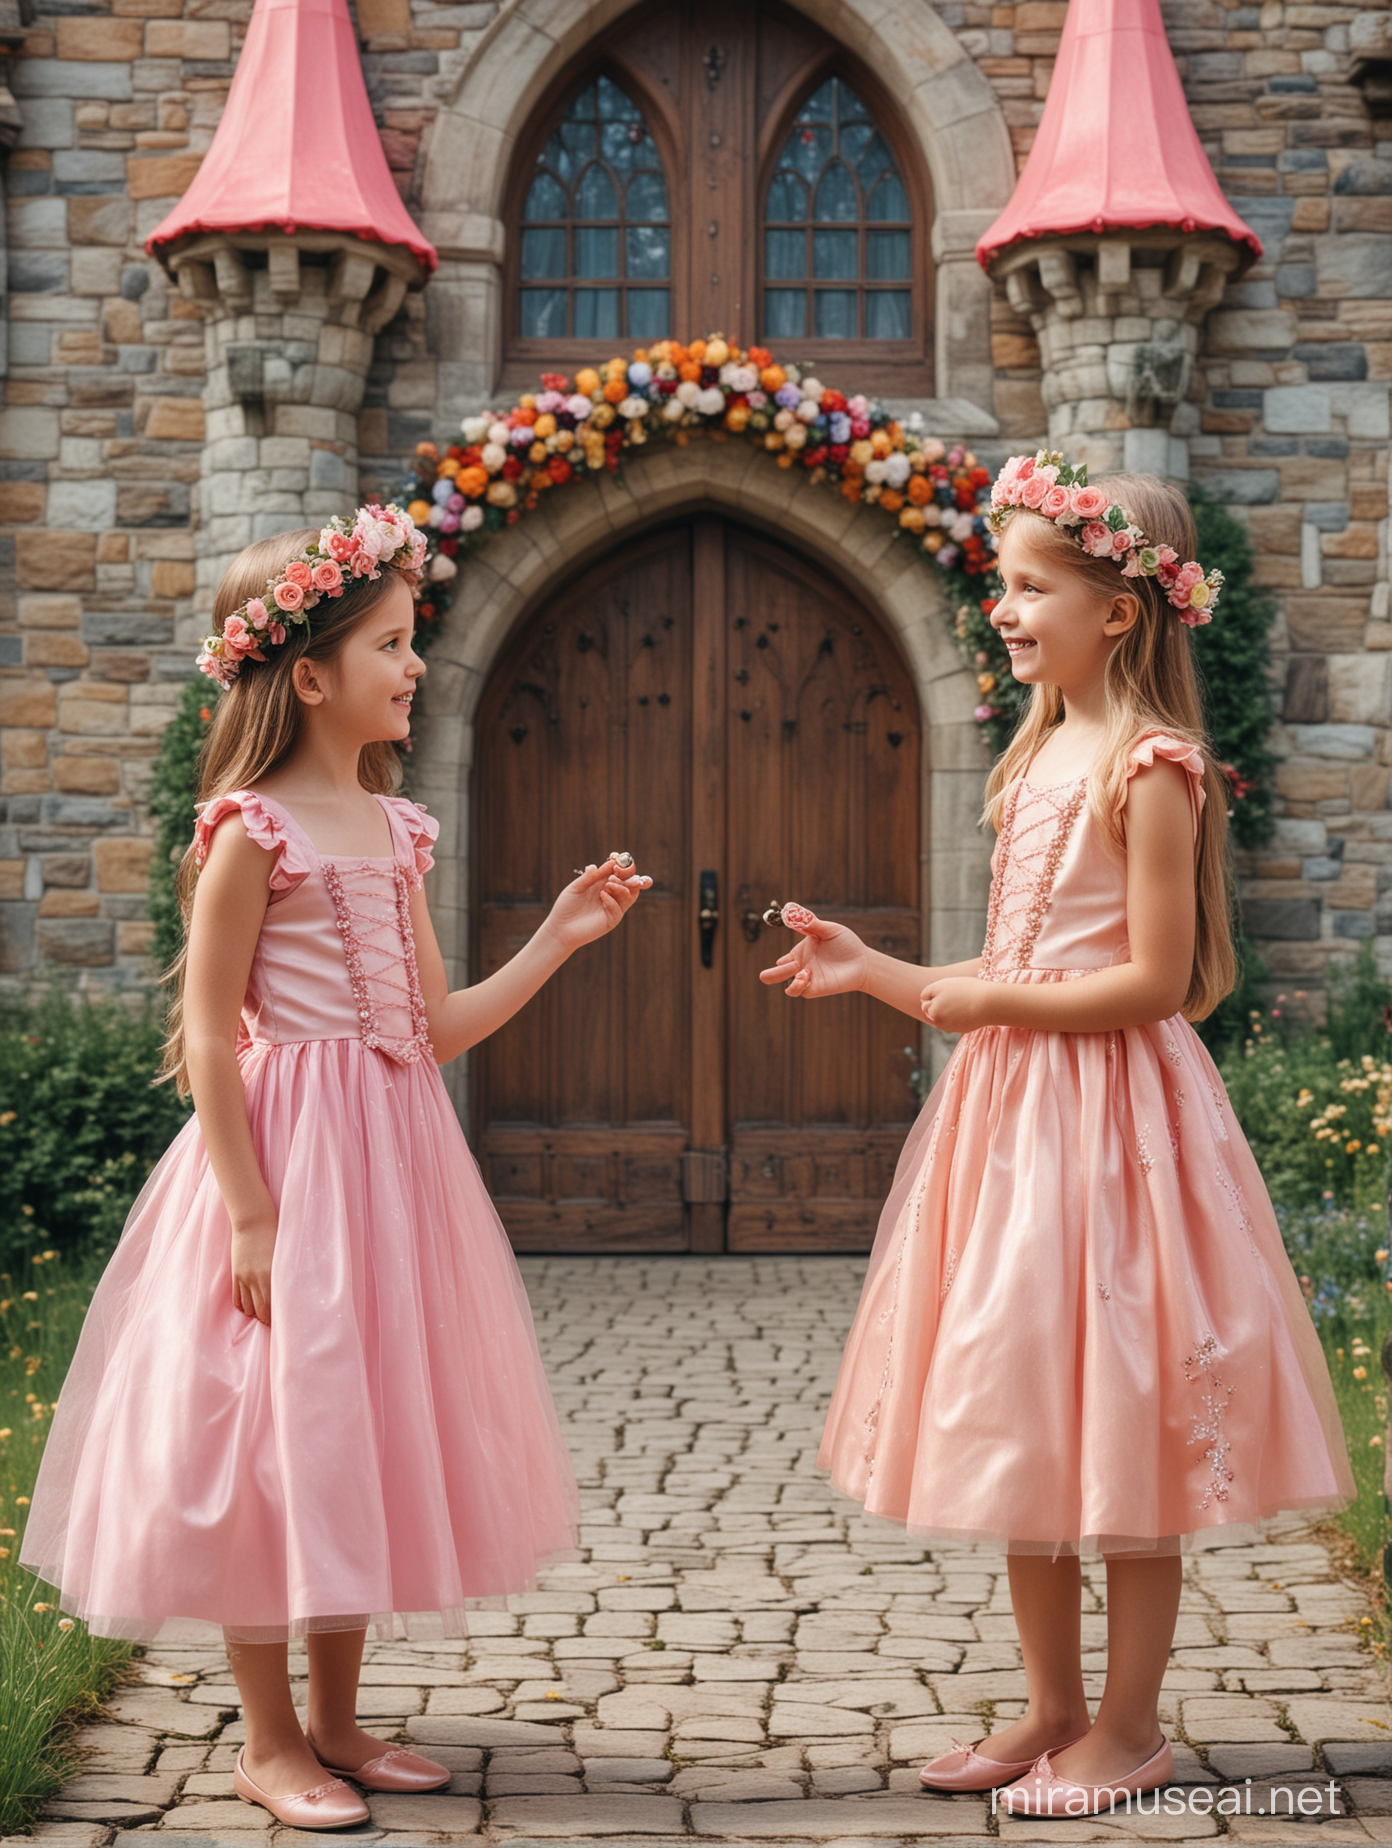 Две девочки, семь лет, одеты в пышные платья, венки из цветов на голове, стоят на фоне сказочного замка из конфет, смотрят друг на друга, держат в руке волшебного эльфа